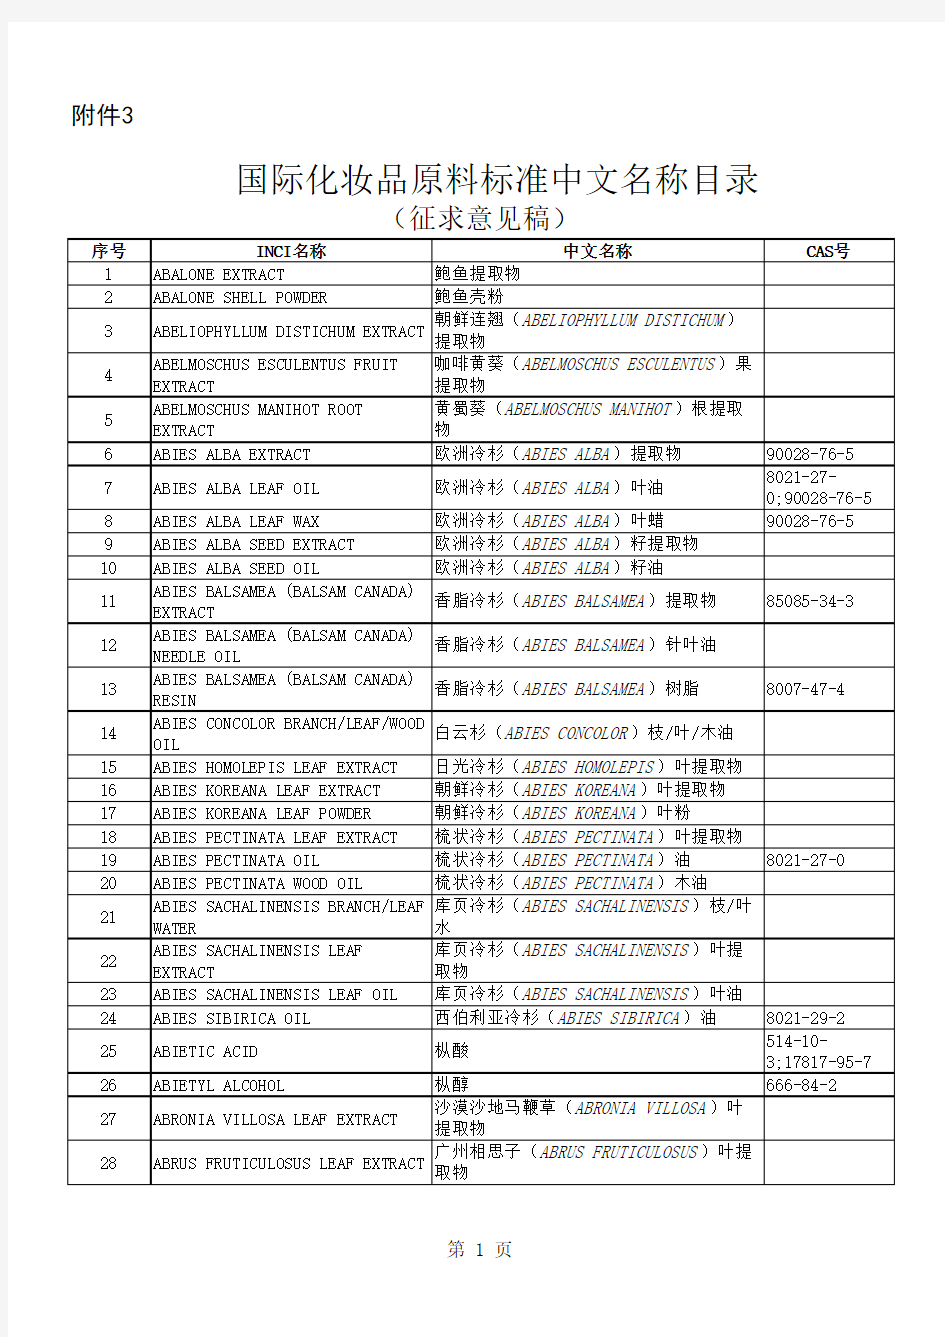 国际化妆品原料标准中文名称目录(2018,征求意见稿)